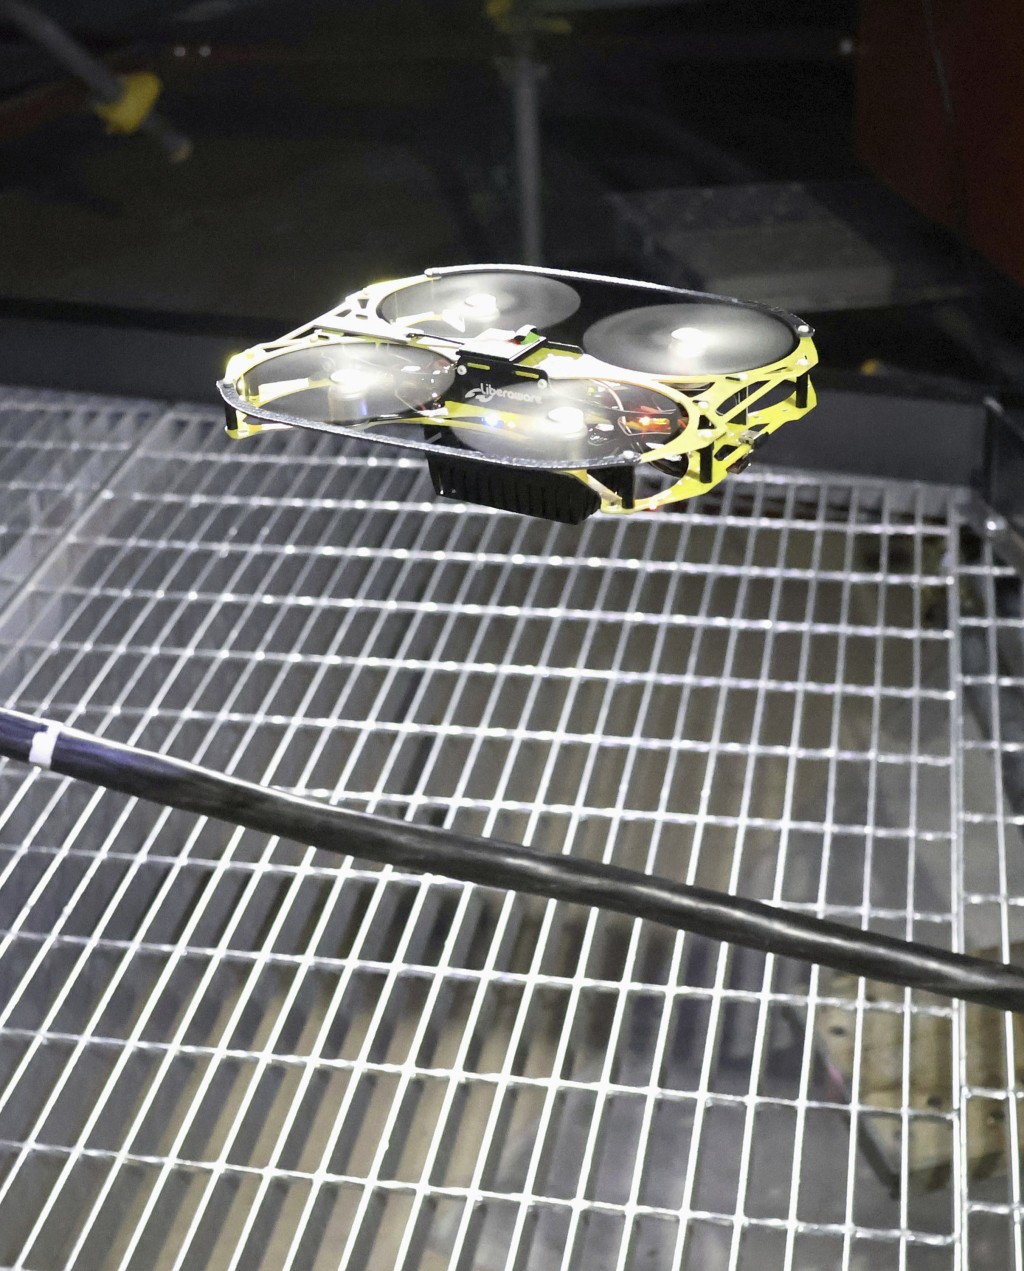 蛇型机械人负责为无人机中转无线信号，用于调查福岛第一核电站1号机组反应堆安全壳内未积水区域。。美联社